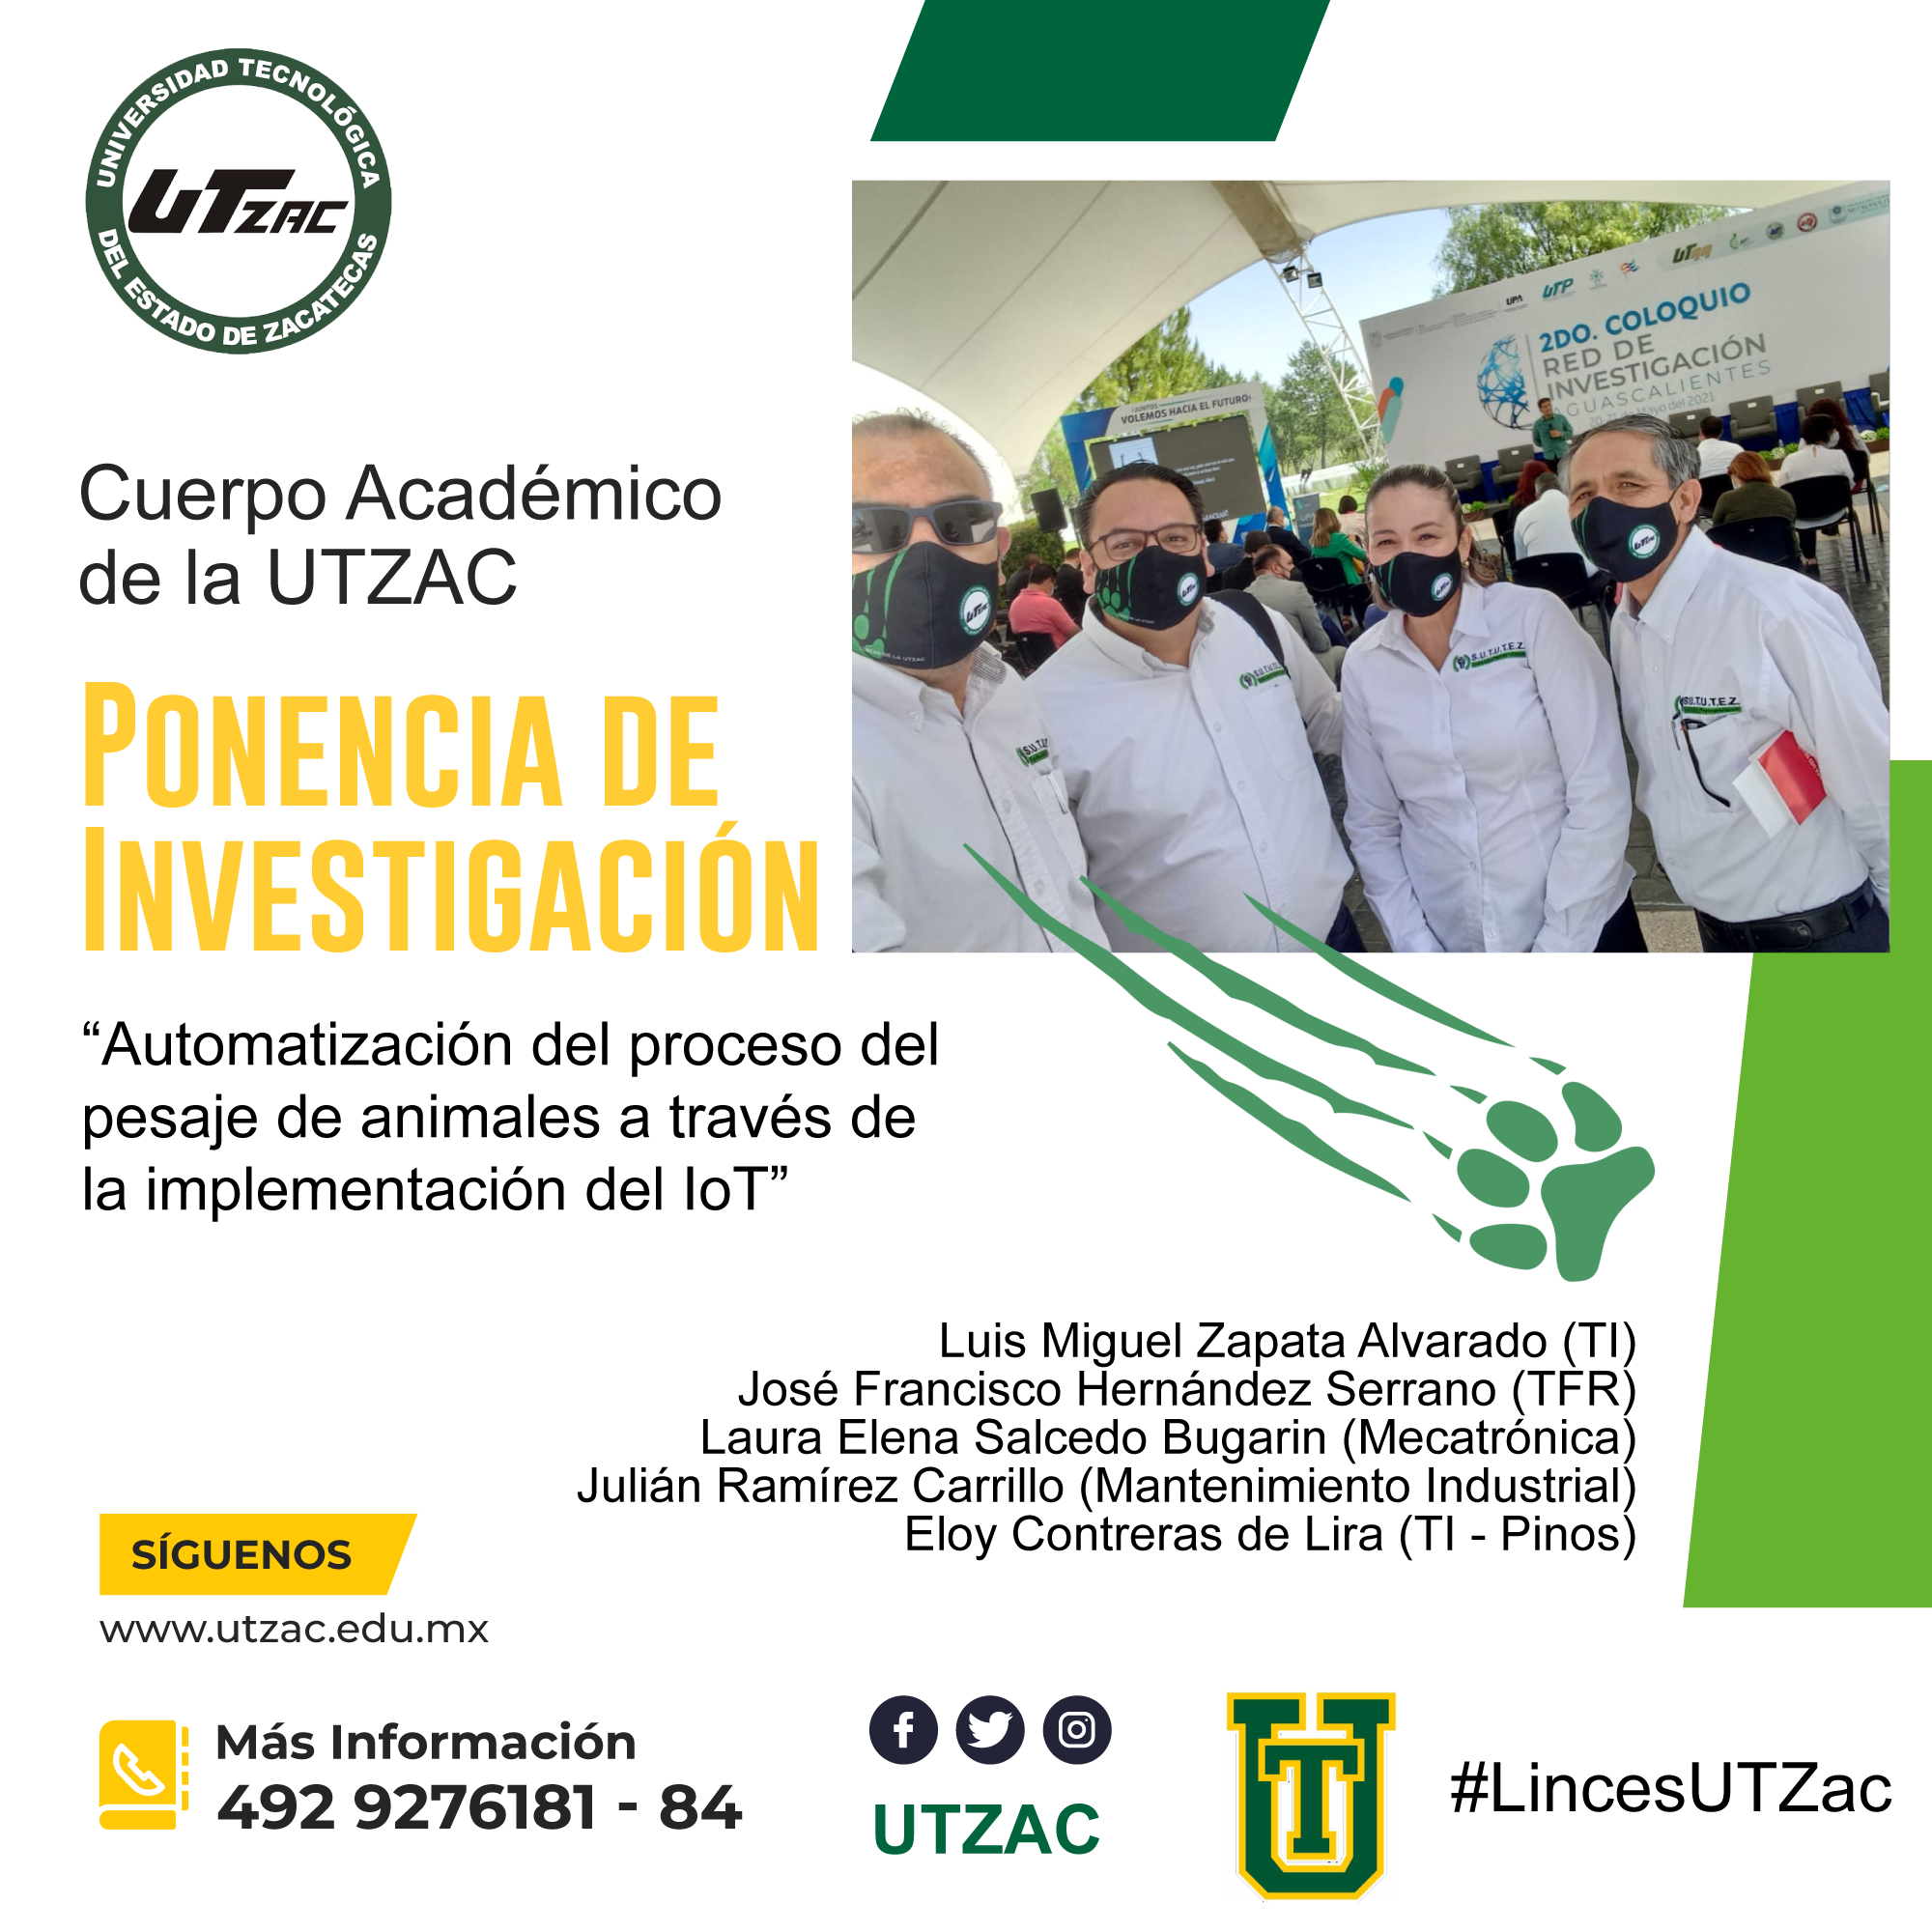 (Español) Presenta Cuerpo Académico de la UTZAC artículo científico sobre la automatización de la ganadería